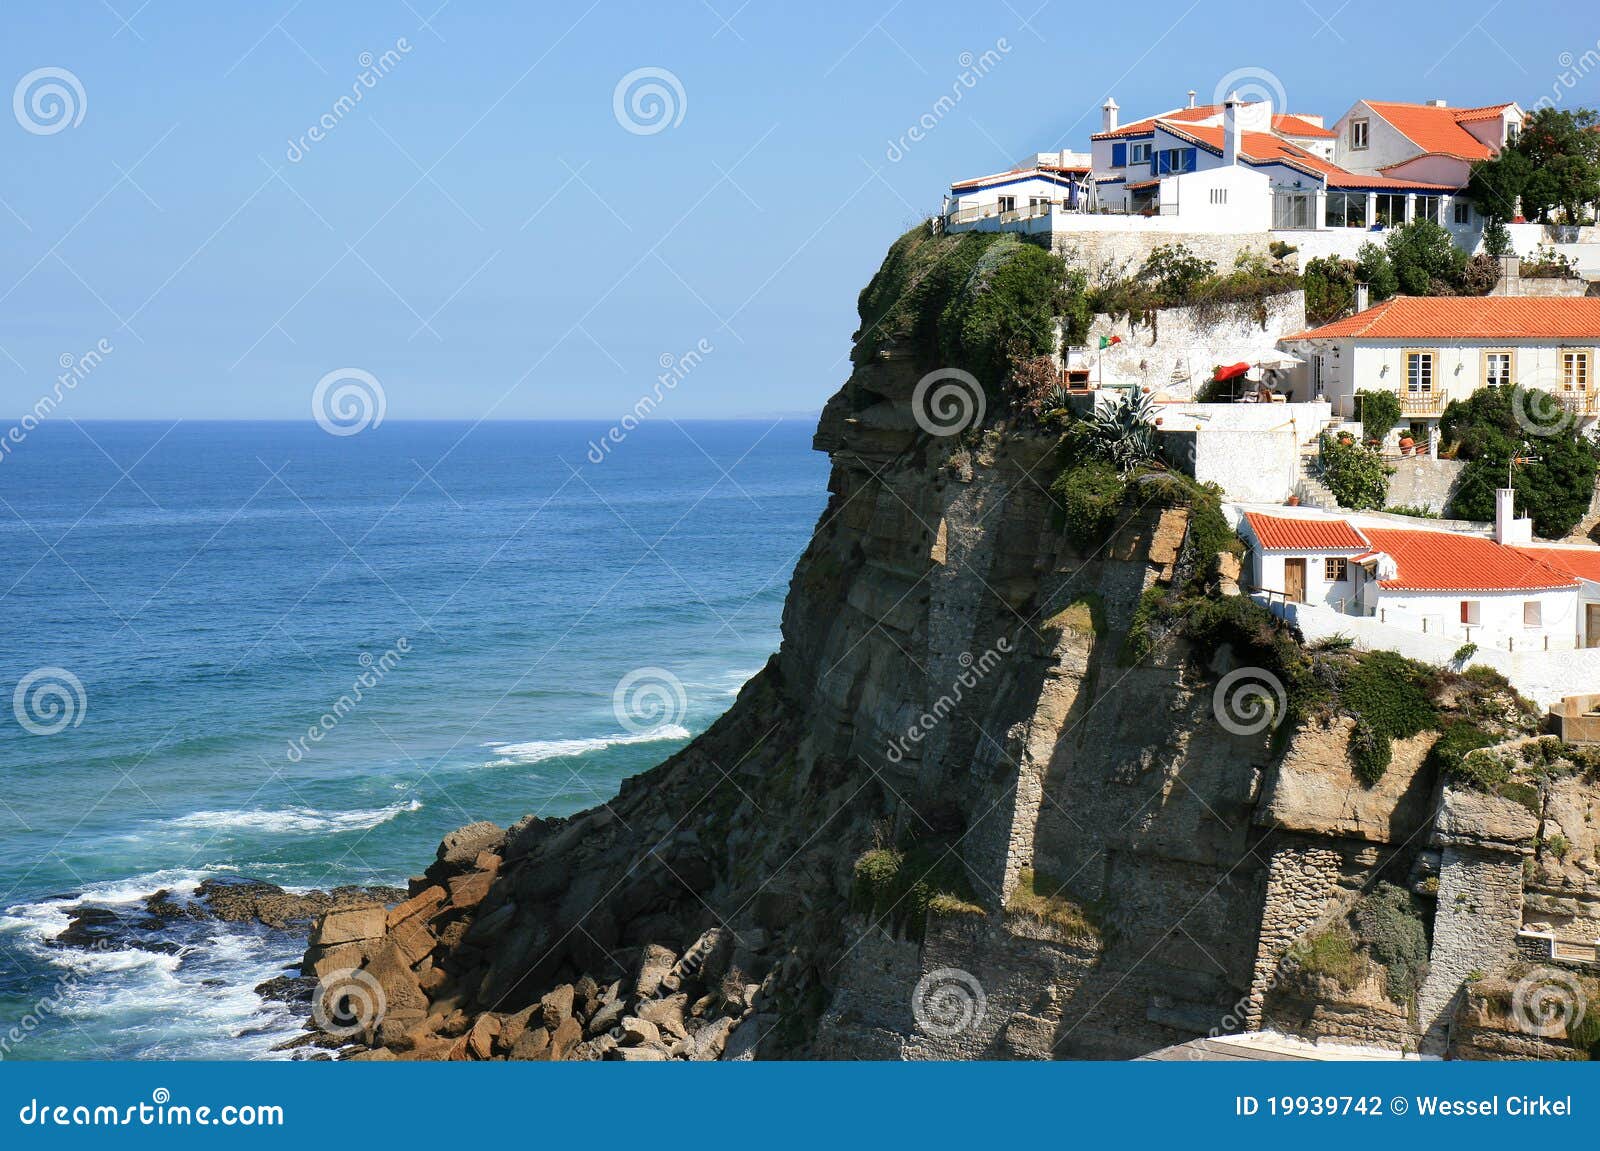 portuguese white houses of azenhas do mar